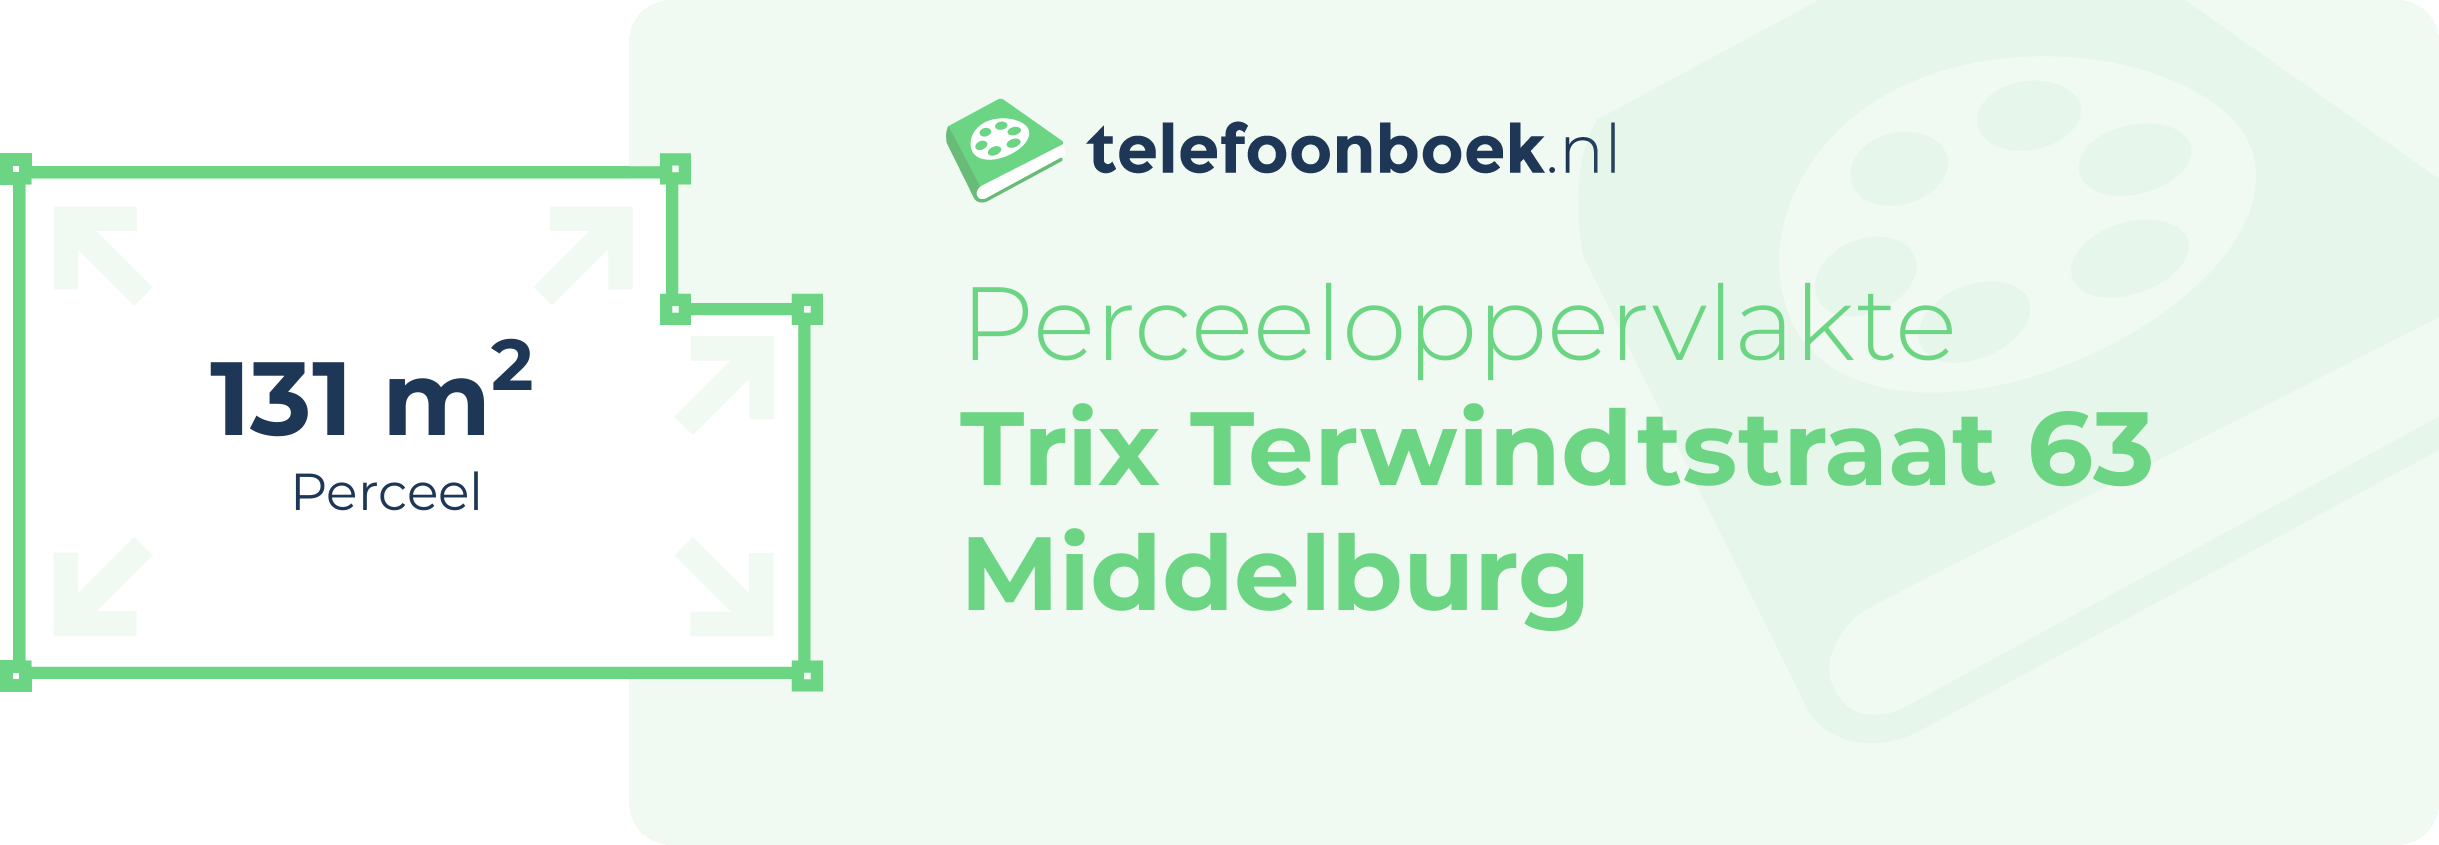 Perceeloppervlakte Trix Terwindtstraat 63 Middelburg